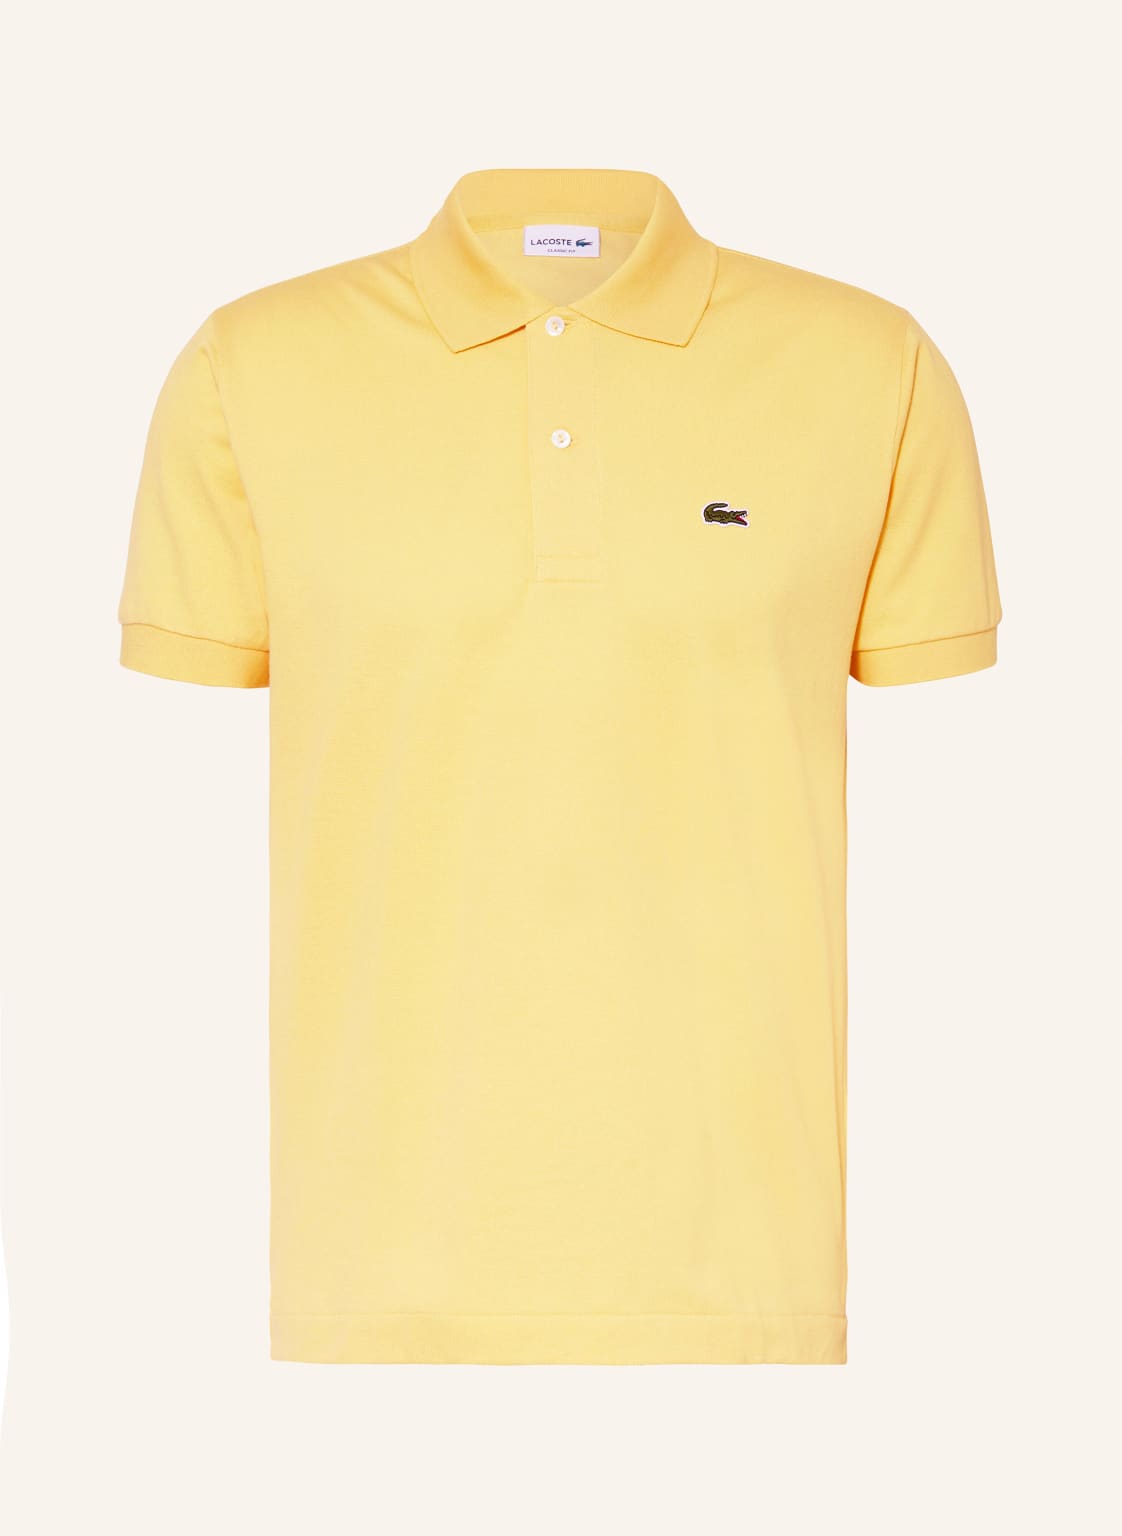 Lacoste Piqué-Poloshirt Classic Fit gelb von Lacoste